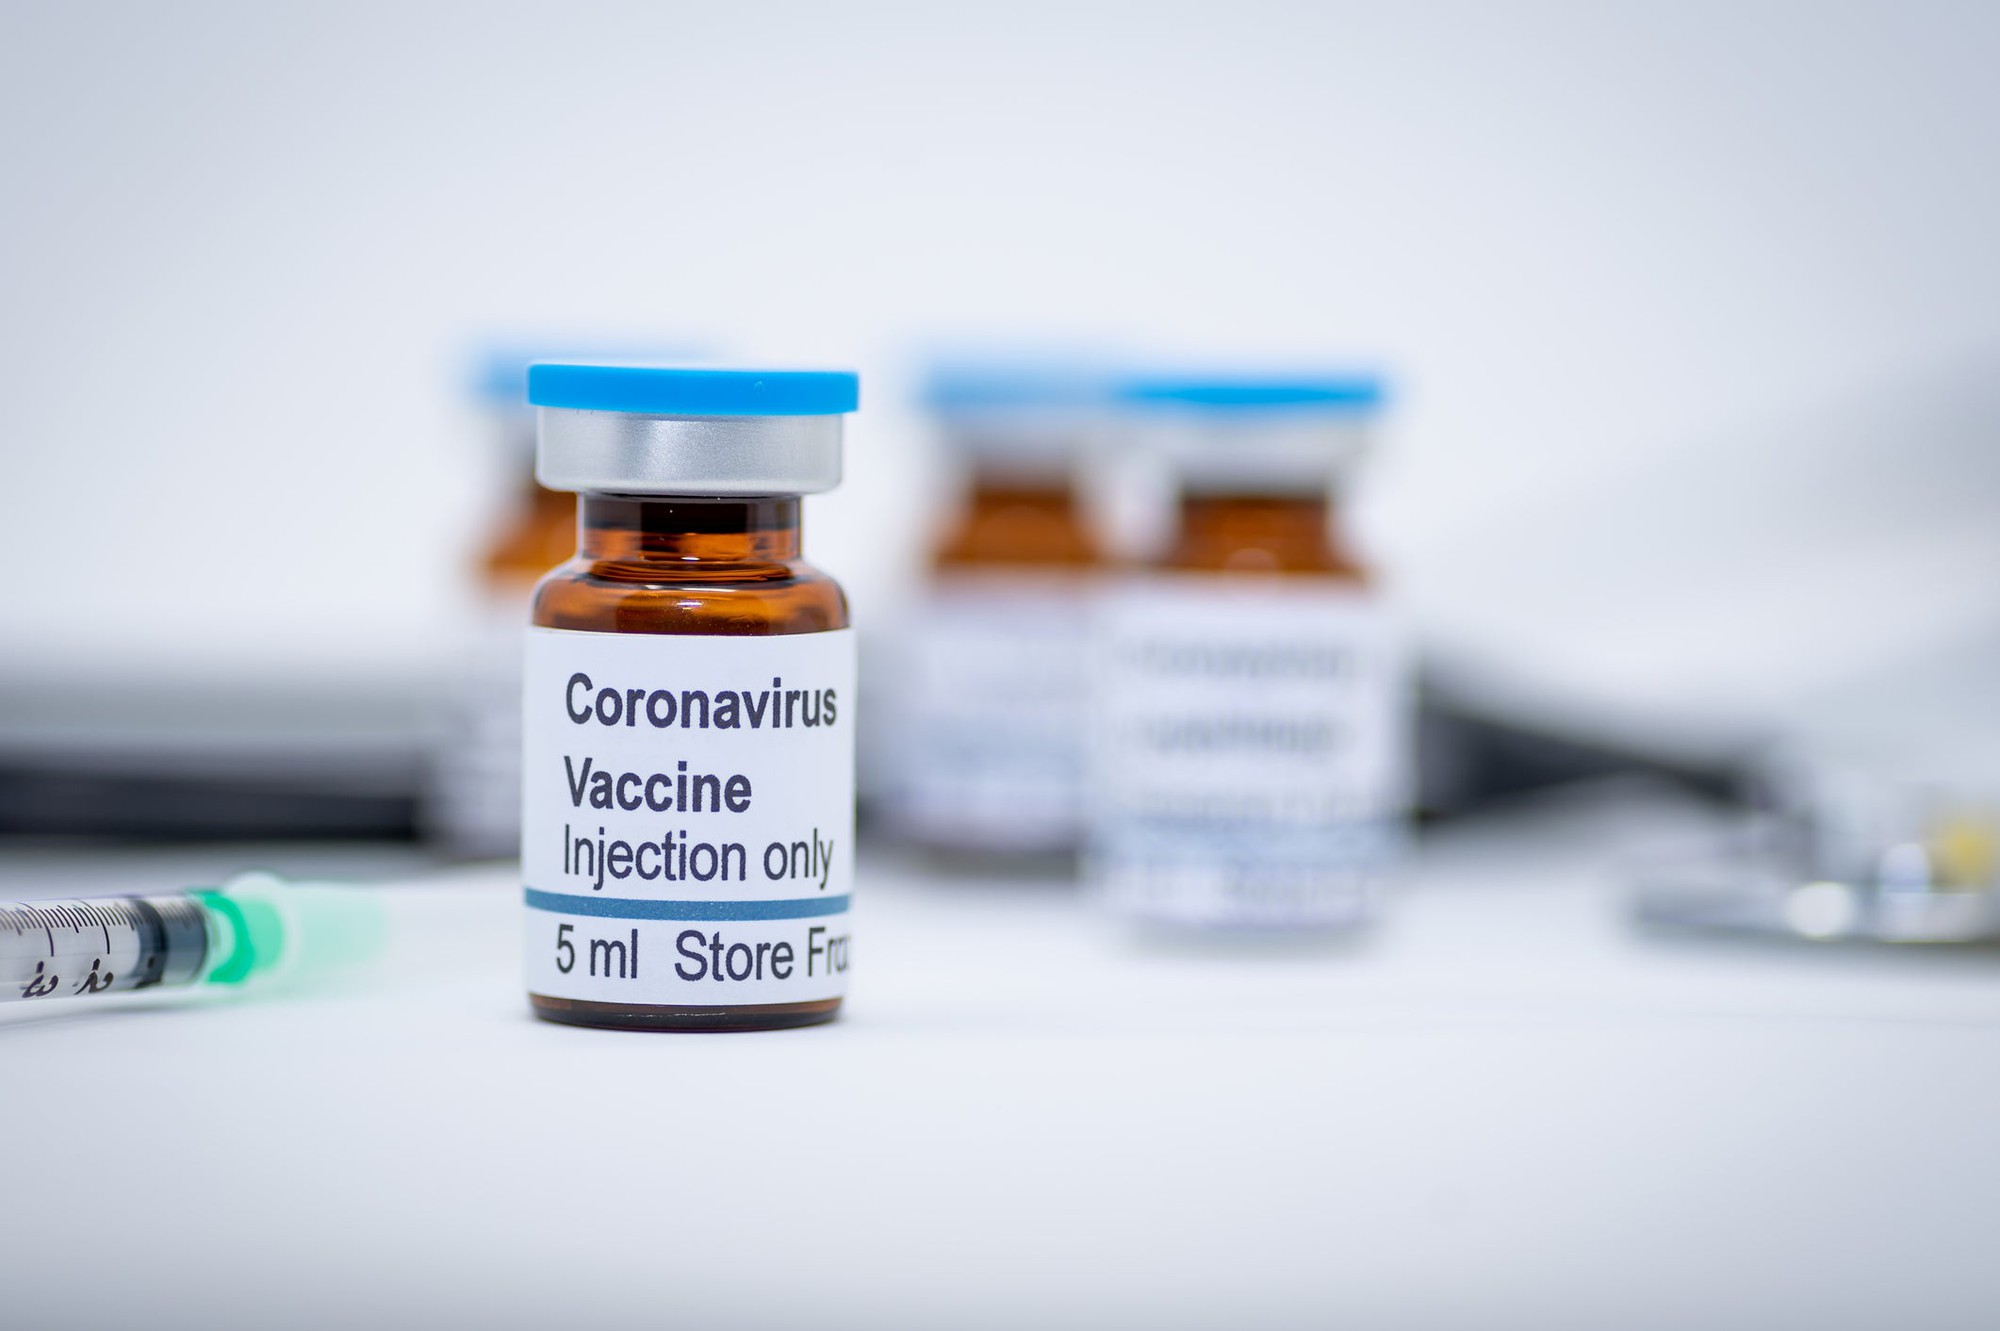 Coronavirus Vaccines: State of Progress